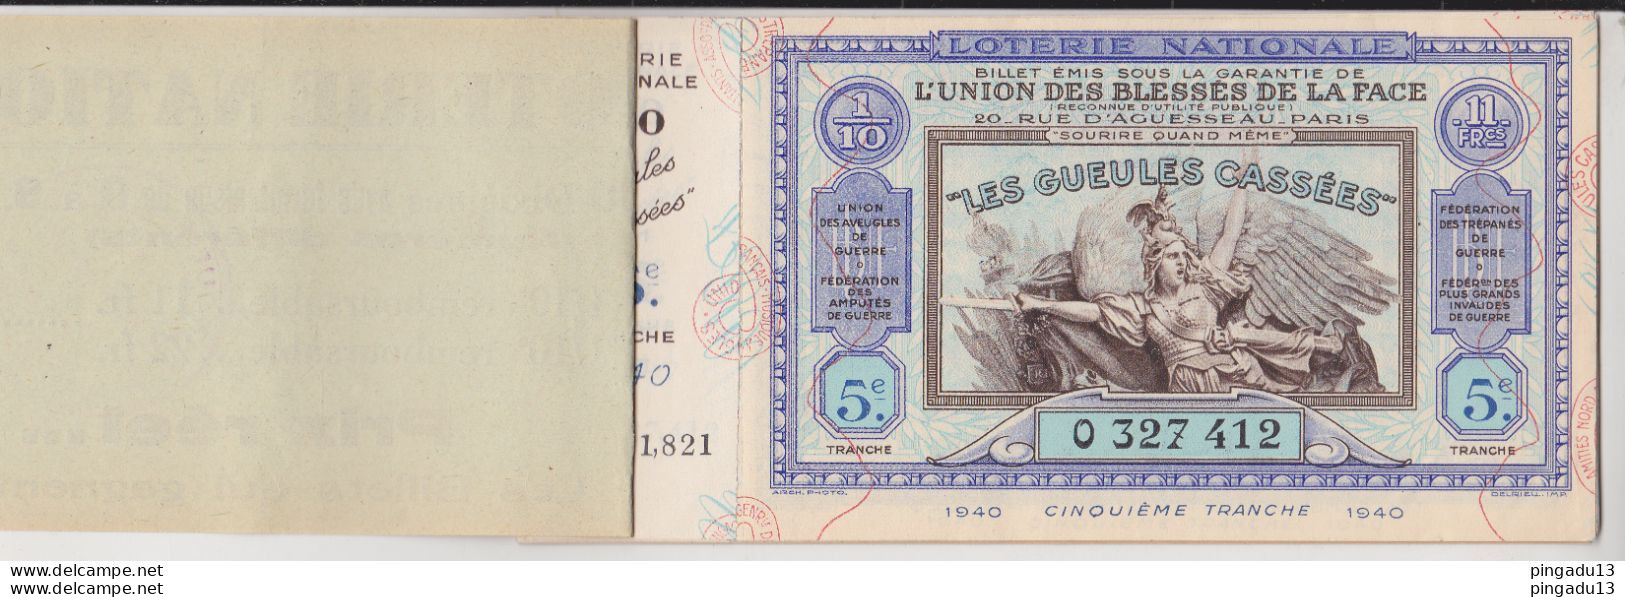 Fixe France Loterie Nationale Carnet De 8 Billets 1940 5 ème Tranche Gueules Cassées Très Bon état - Lotterielose